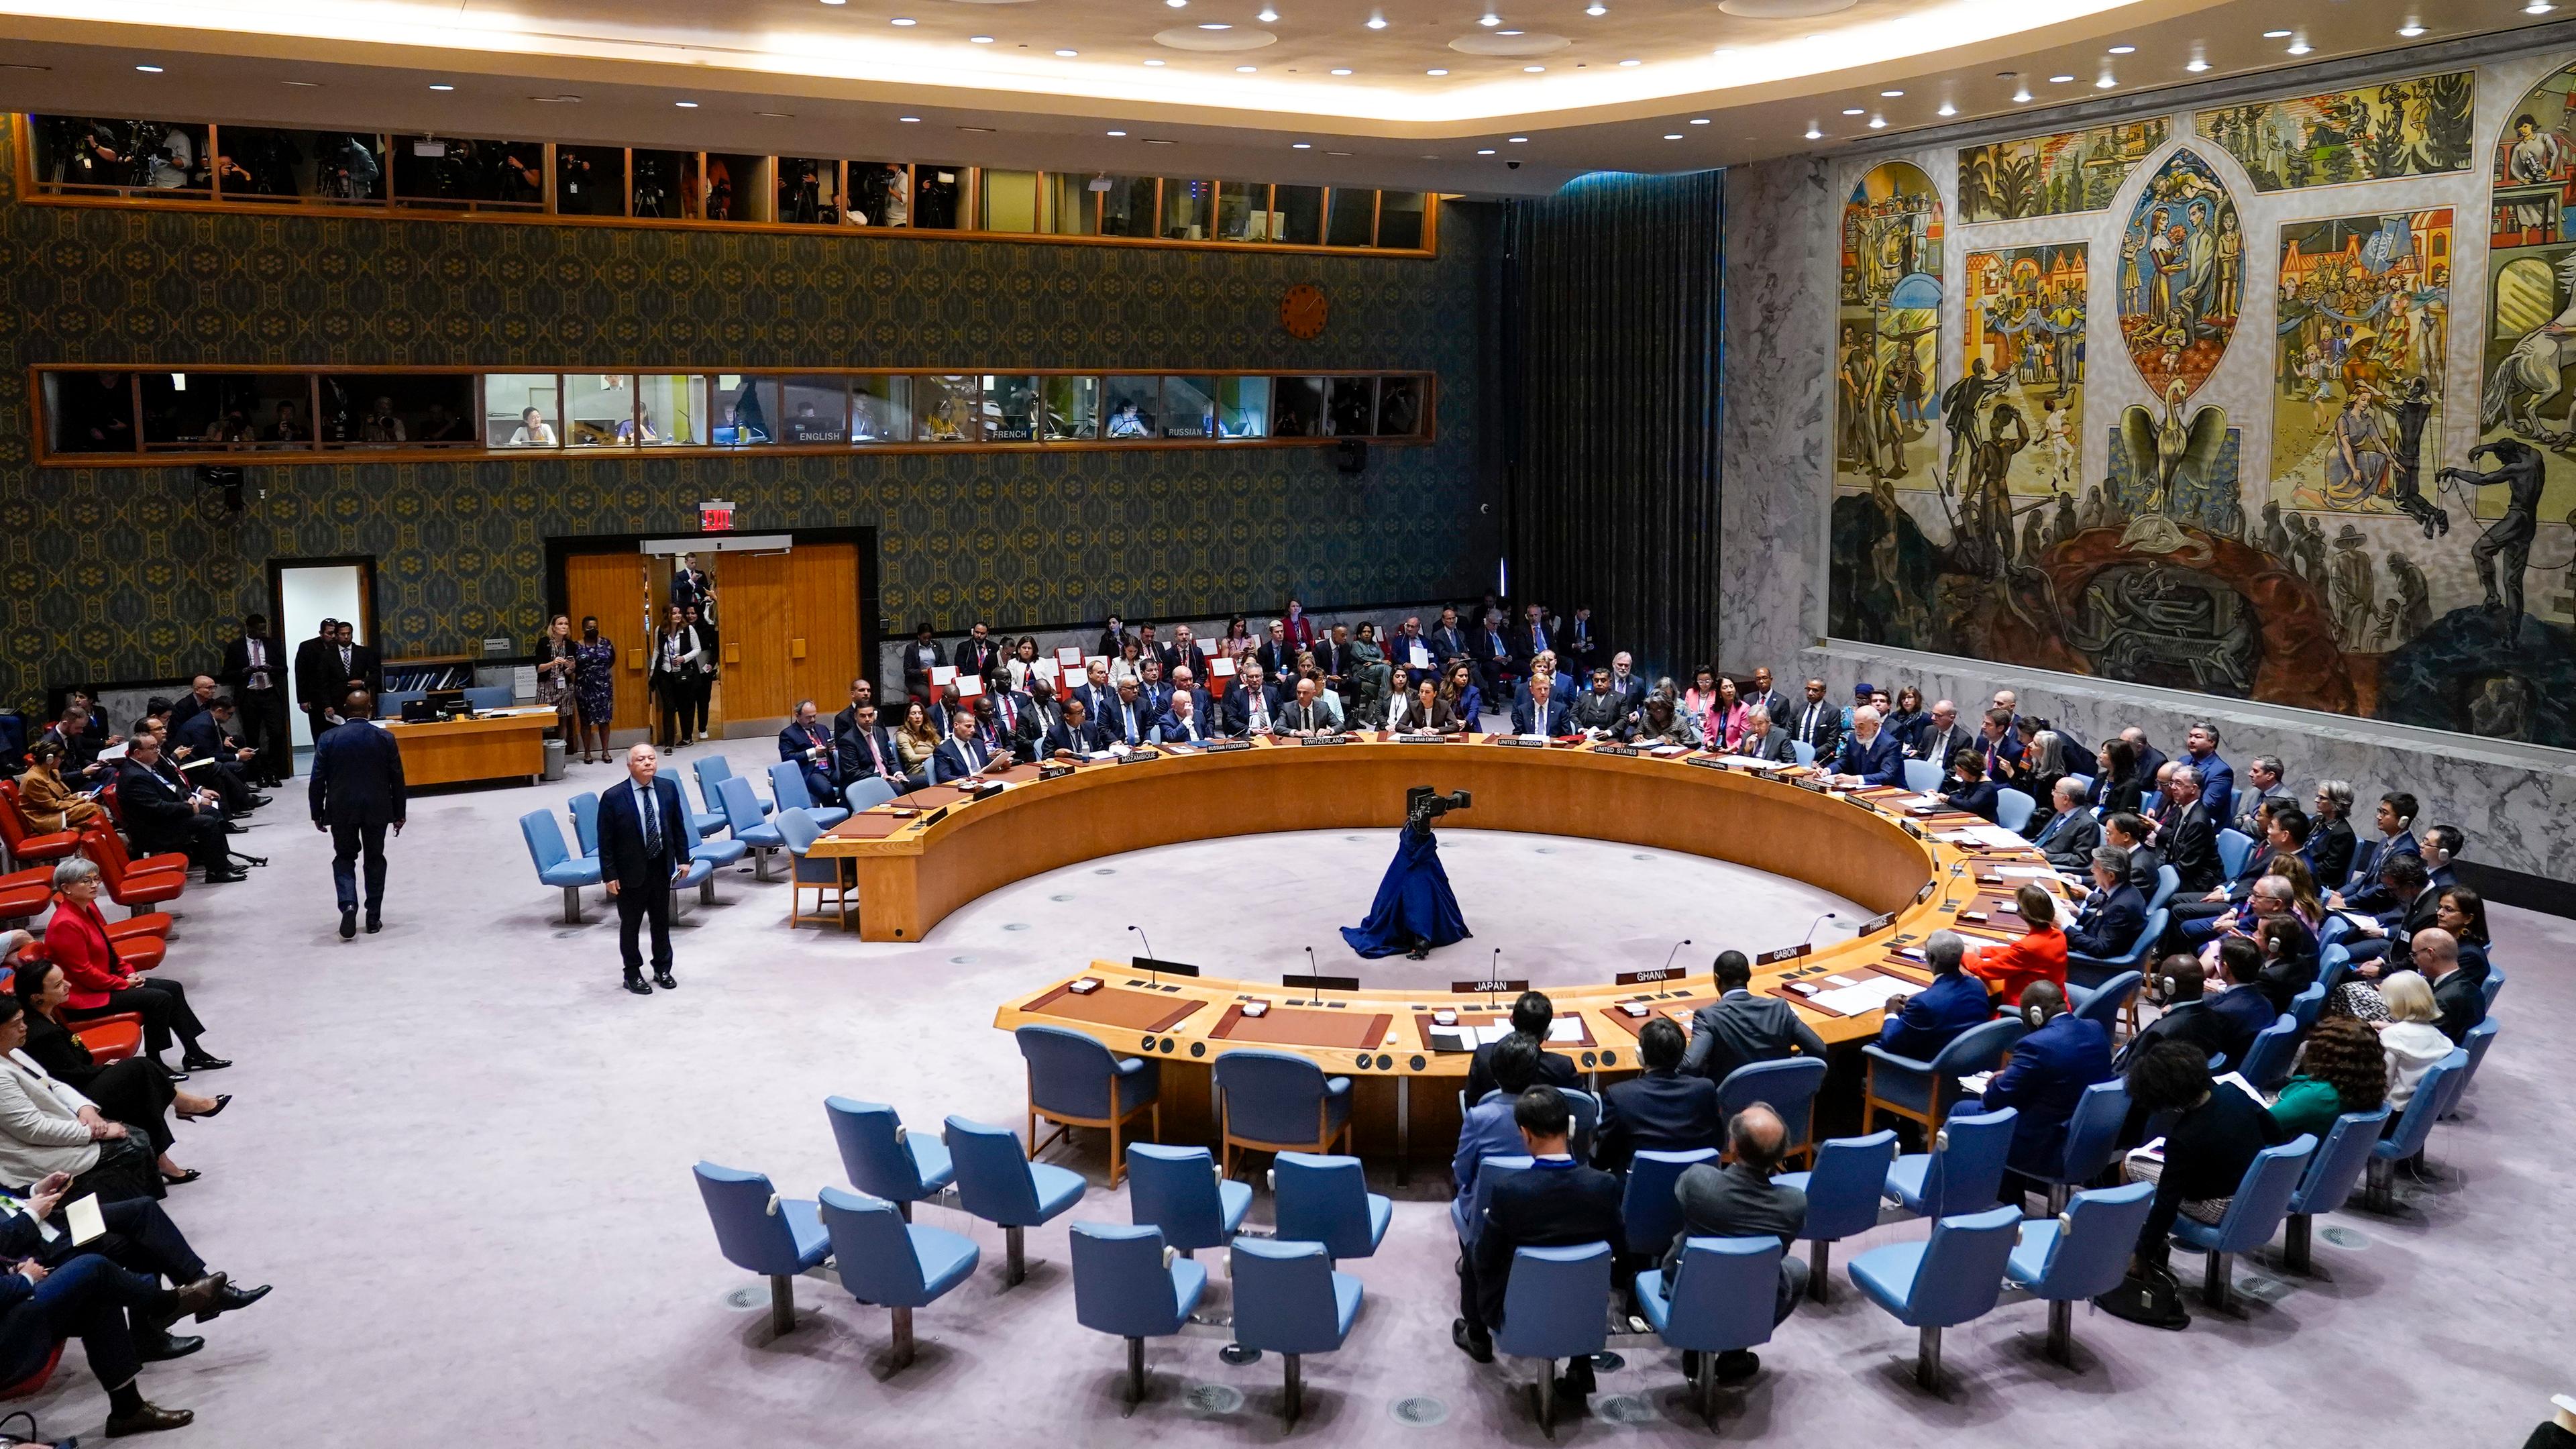 Teilnehmer während einer Sitzung des UN-Sicherheitsrates in New York.